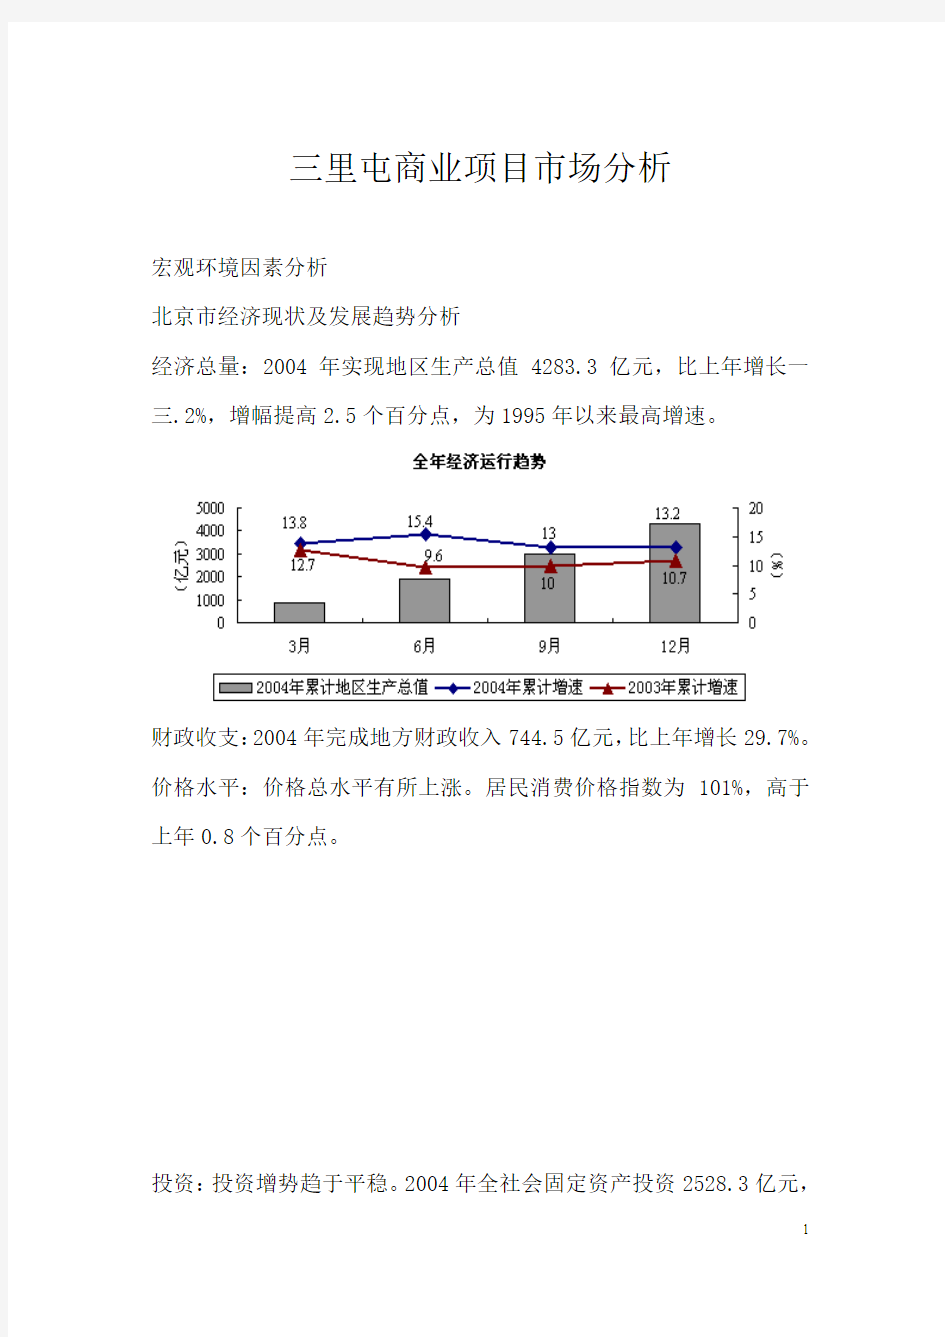 北京市经济现状及发展趋势市场分析